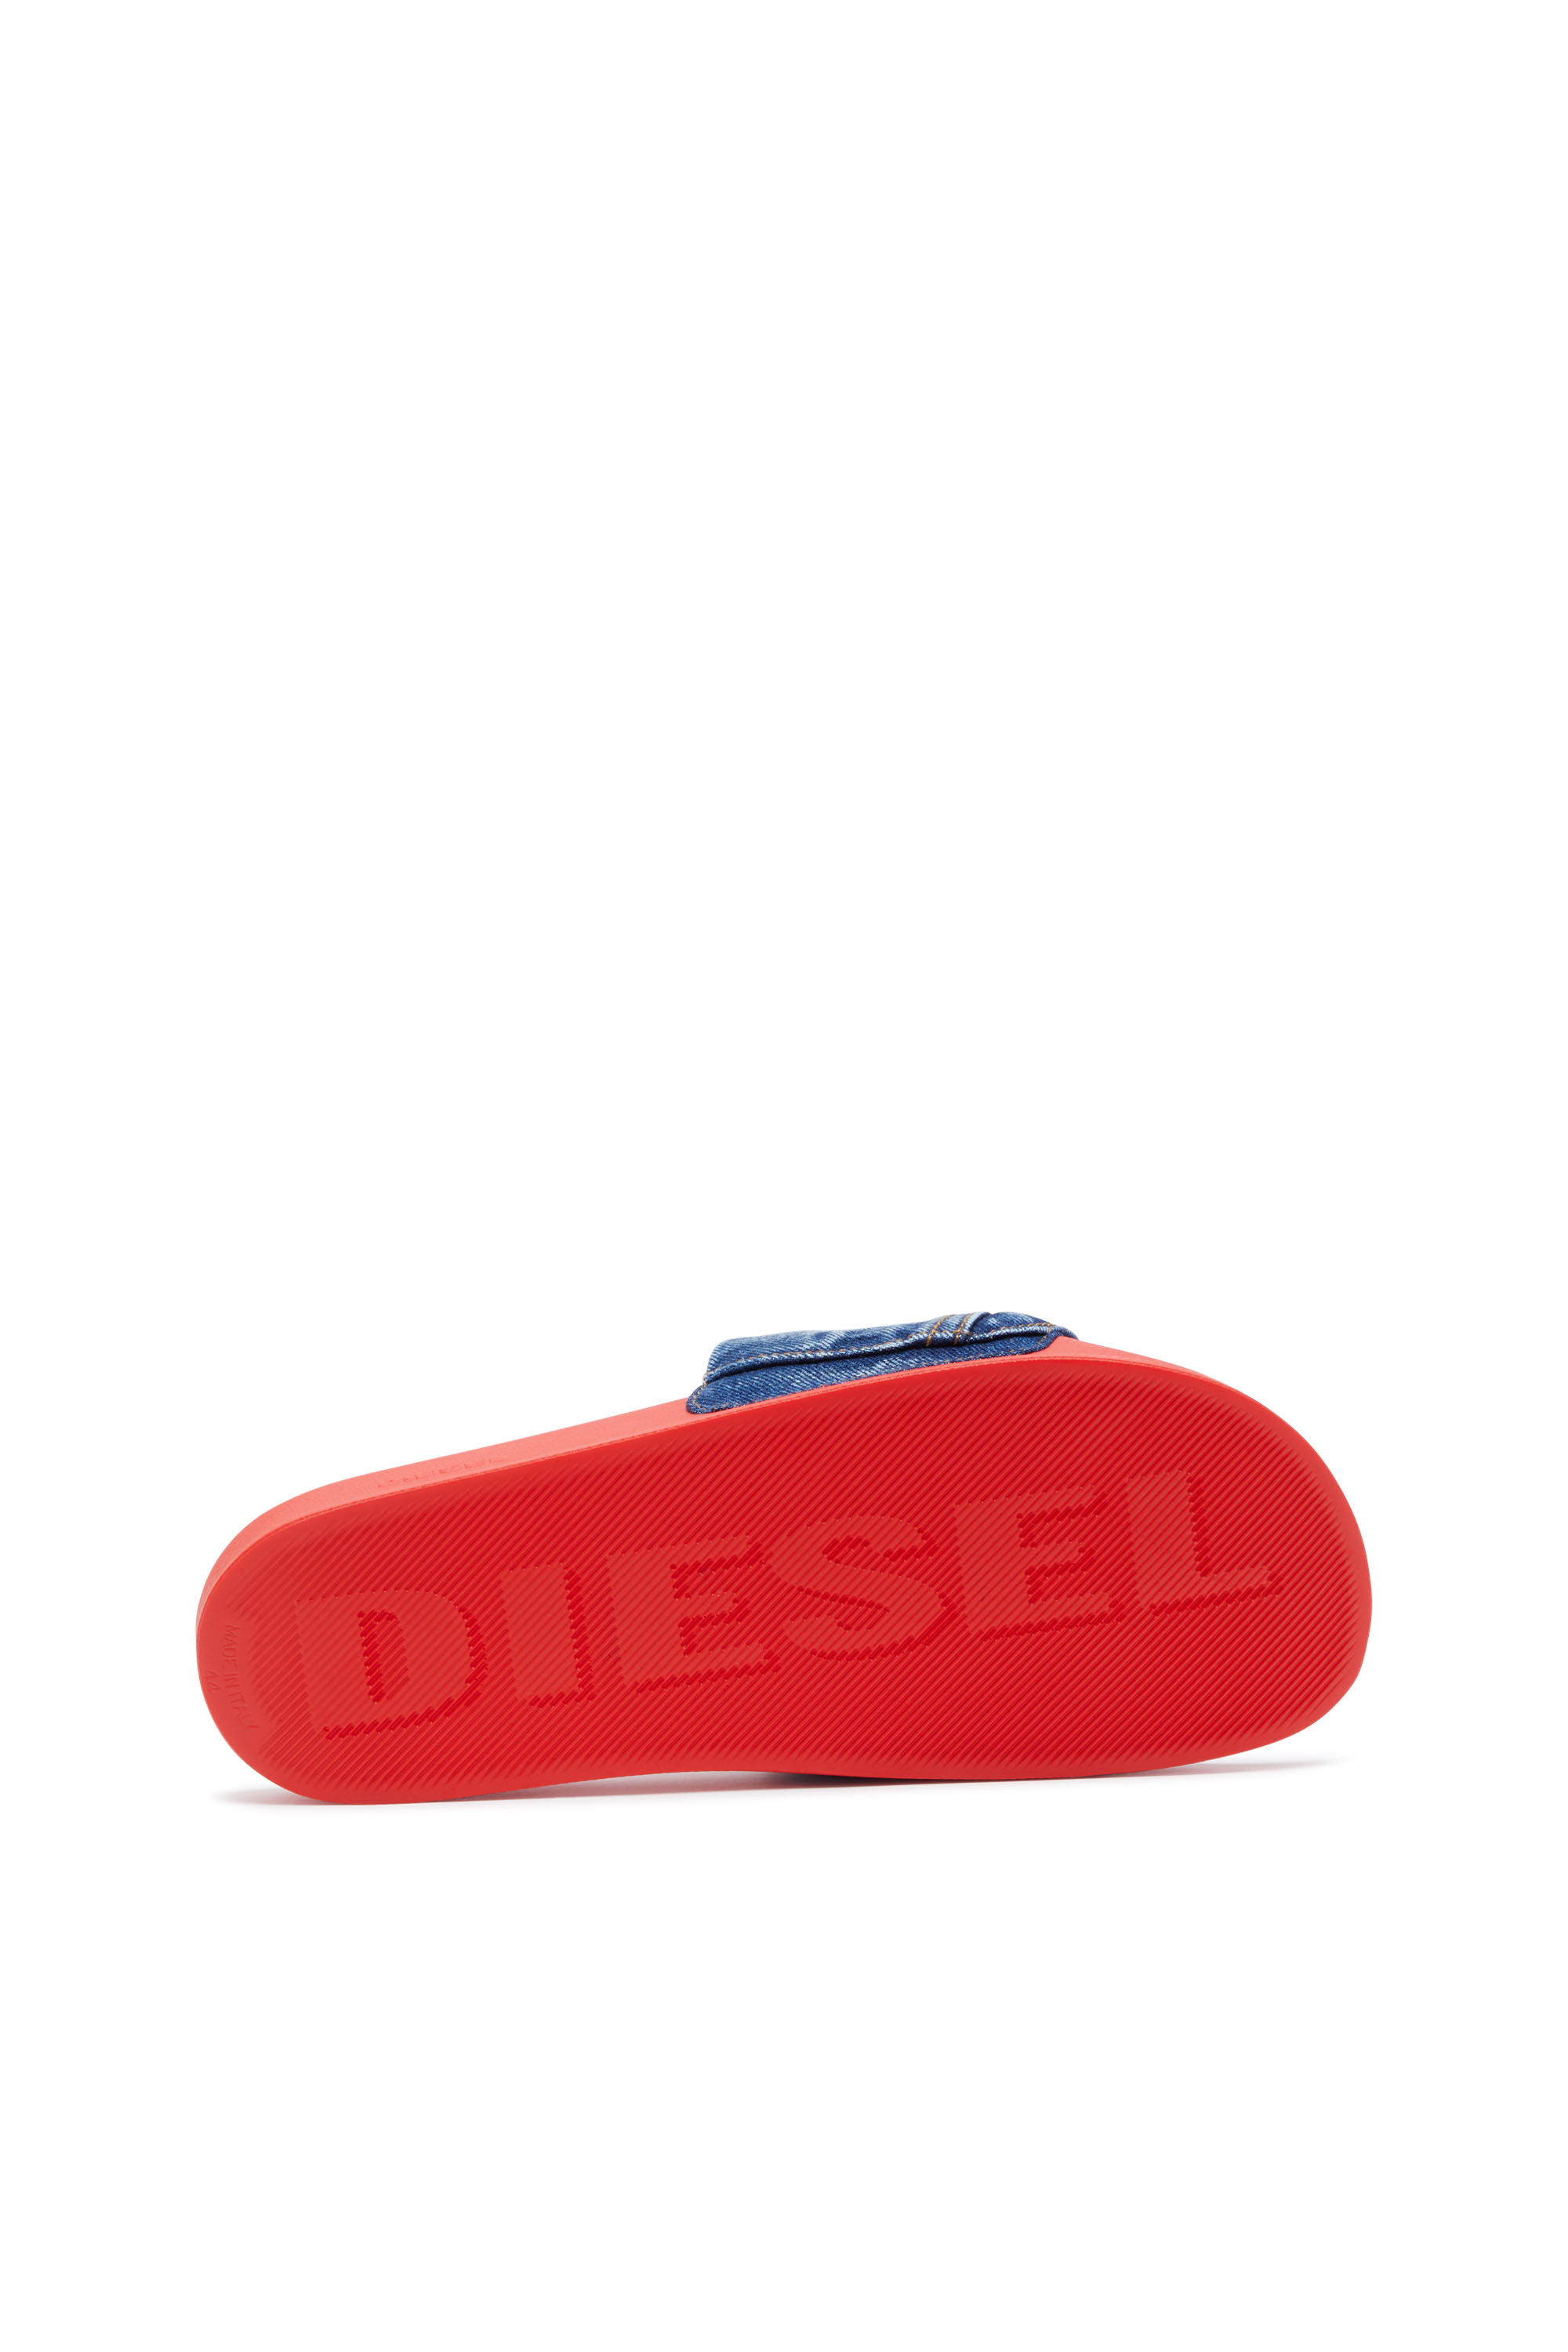 Diesel - SA-MAYEMI PK, Bleu/Rouge - Image 5